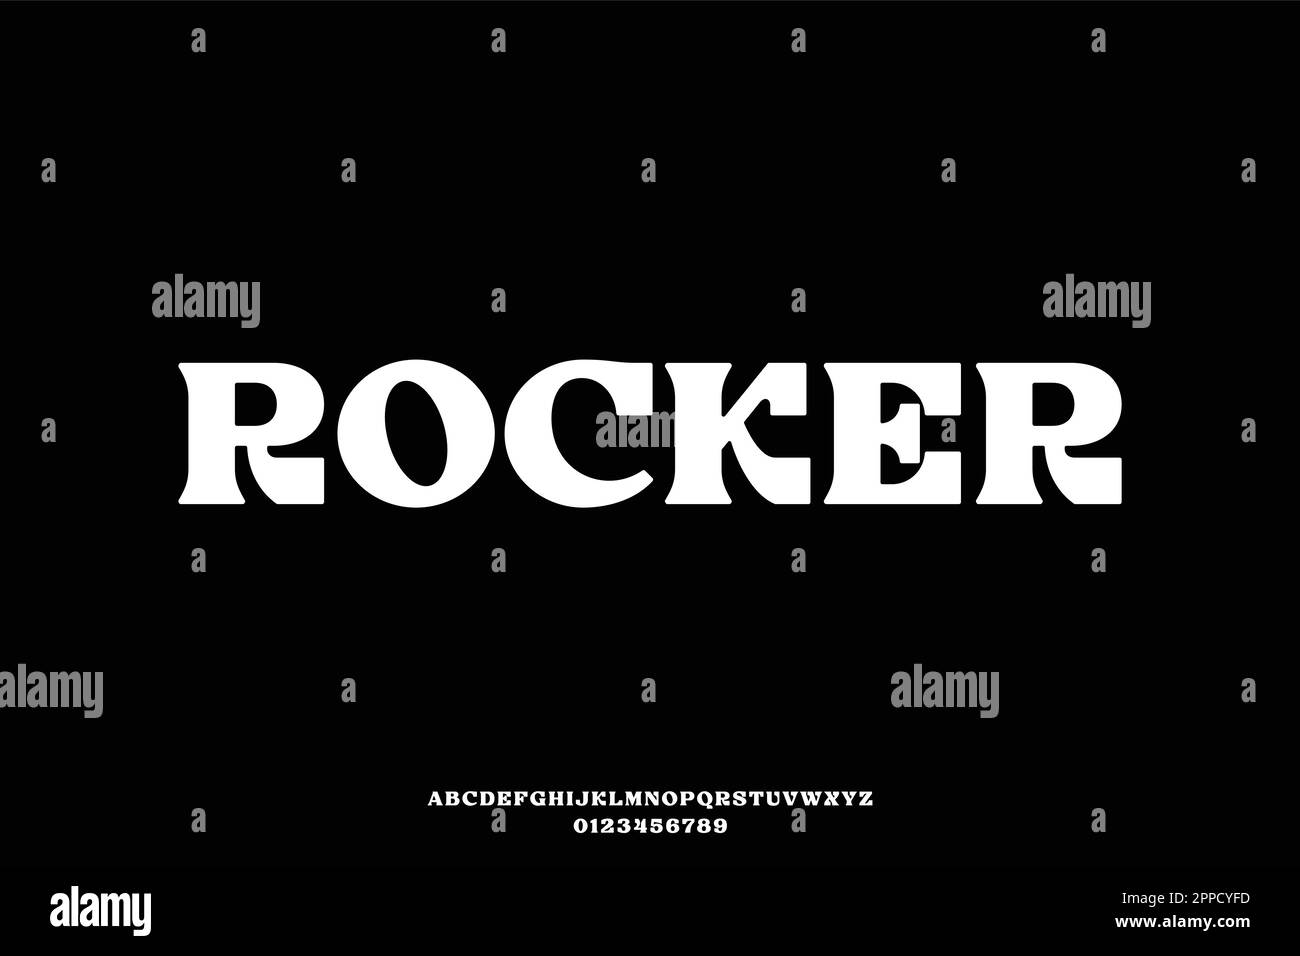 Unique bold serif display font vector Stock Vector